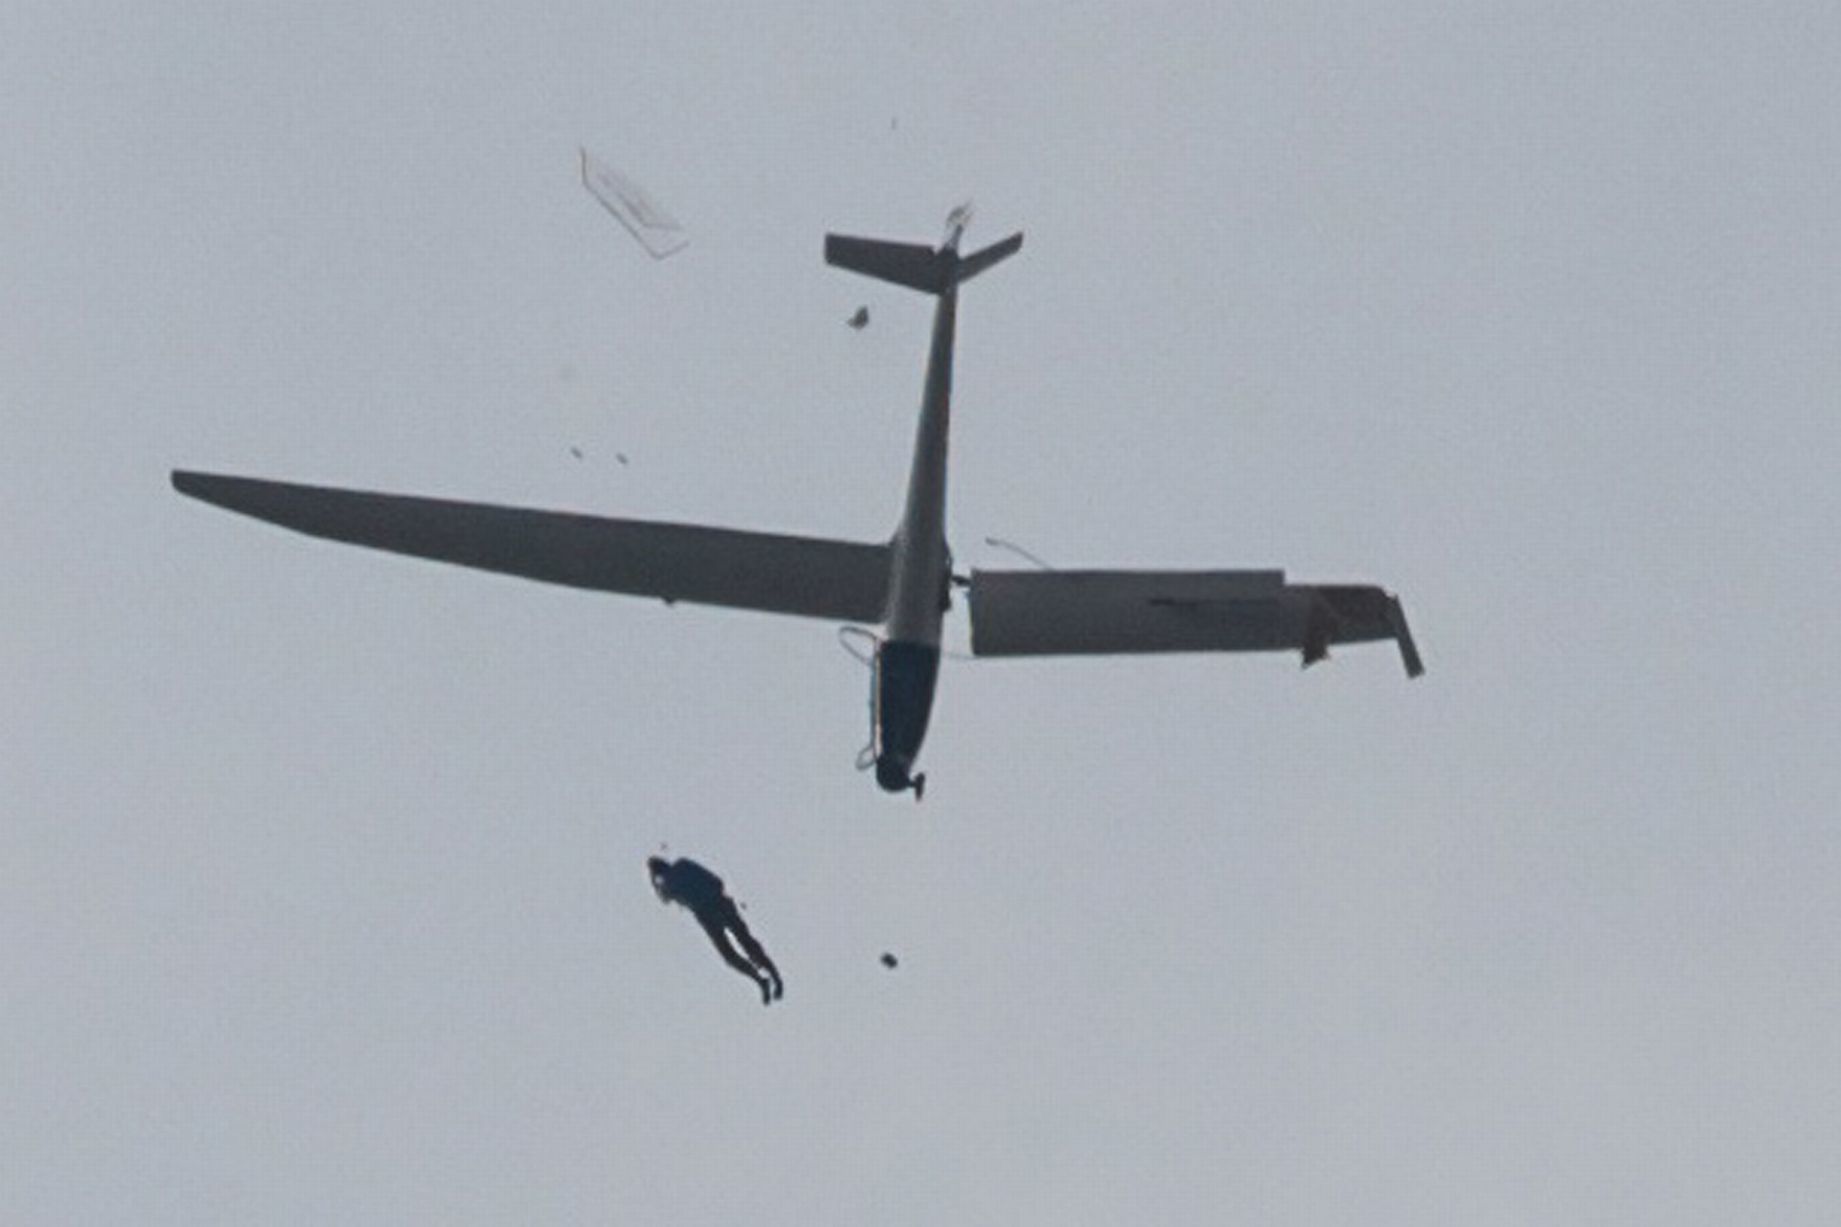 Απίστευτες φωτογραφίες από τη σύγκρουση και πτώση ανεμόπτερου